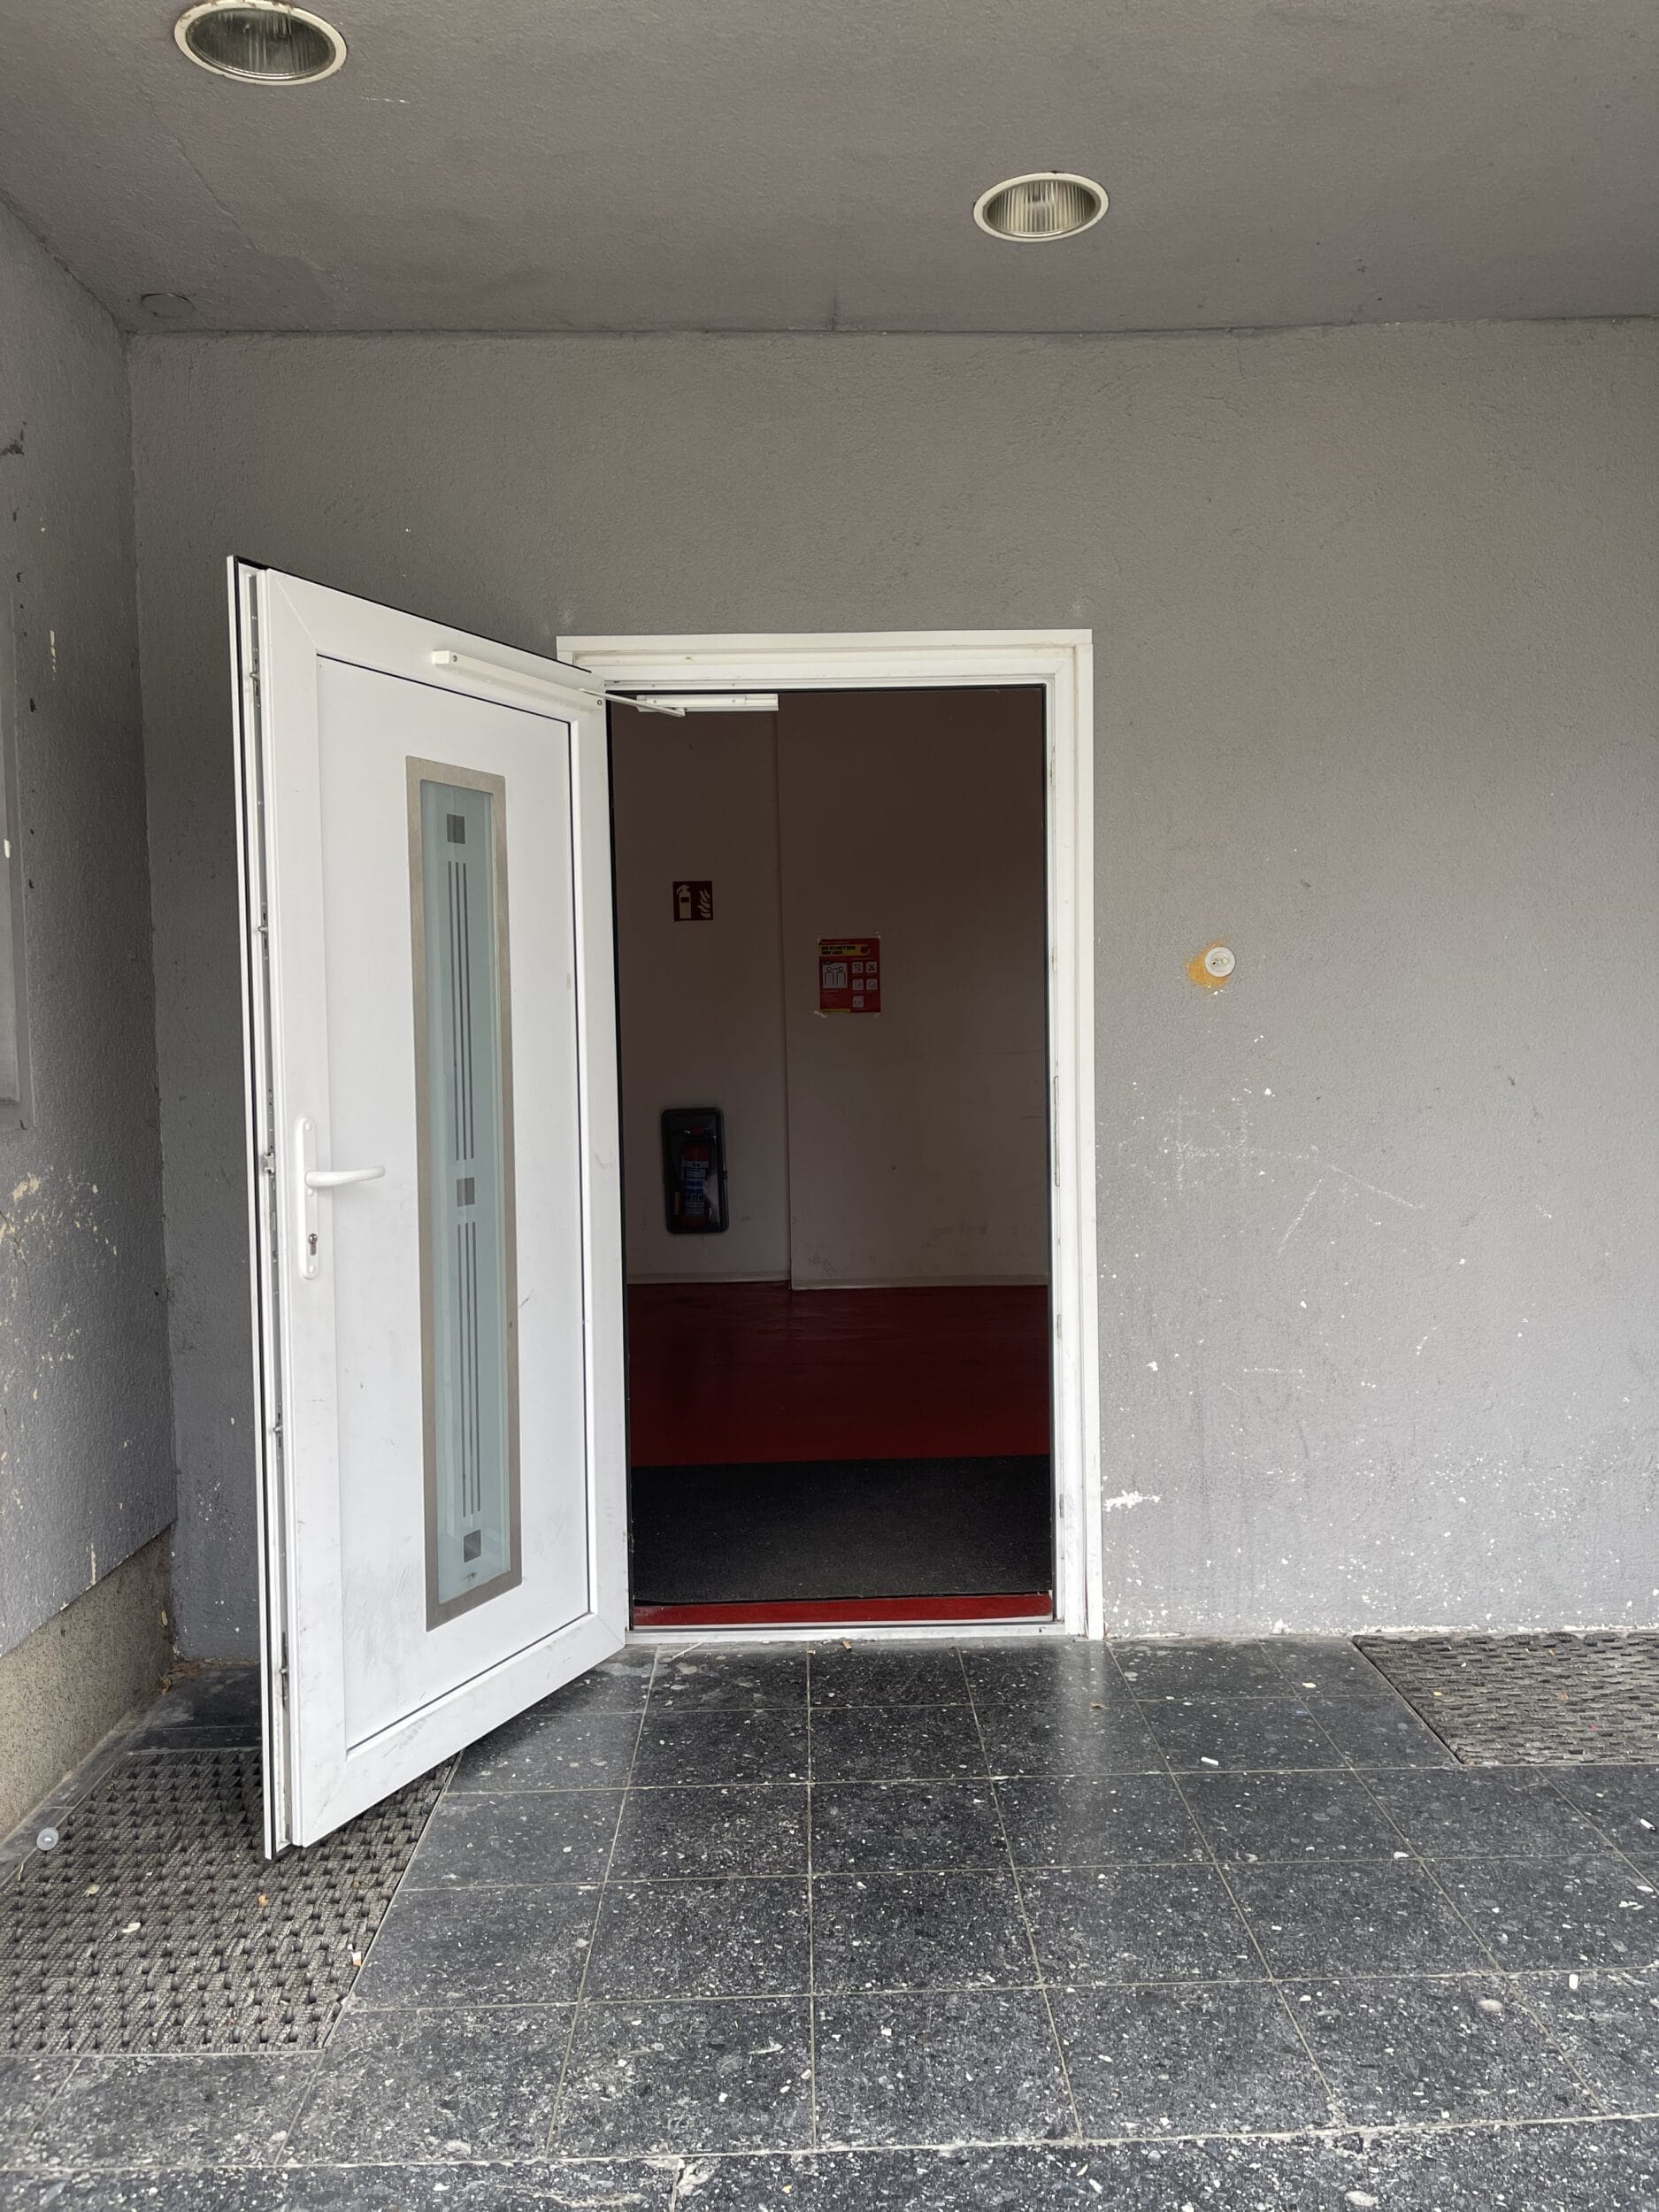 A white door with a red door in front of it.